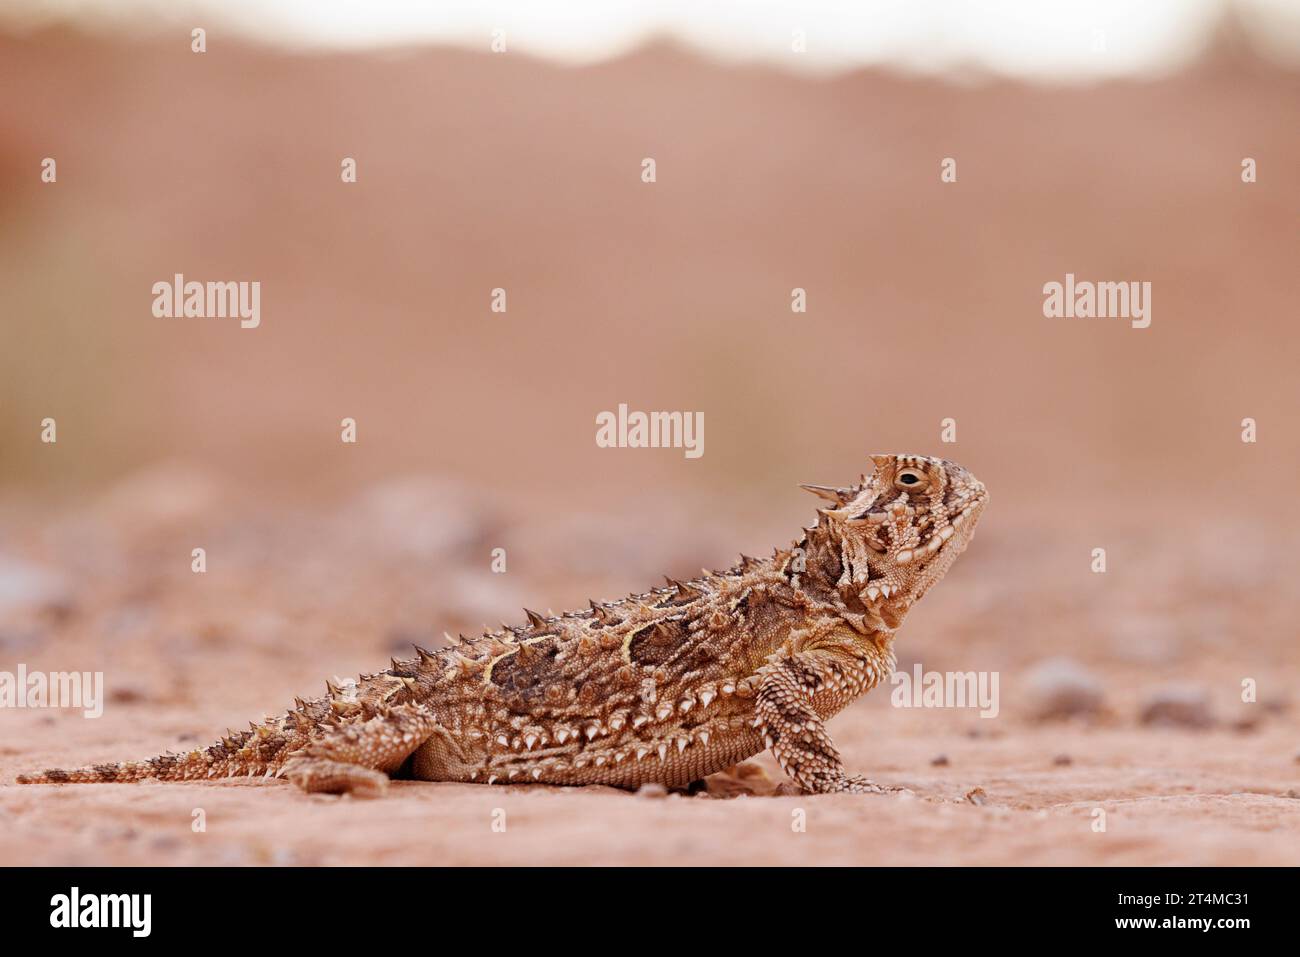 Texas Horned Lizard, Socorro county, New Mexico, USA. Stock Photo